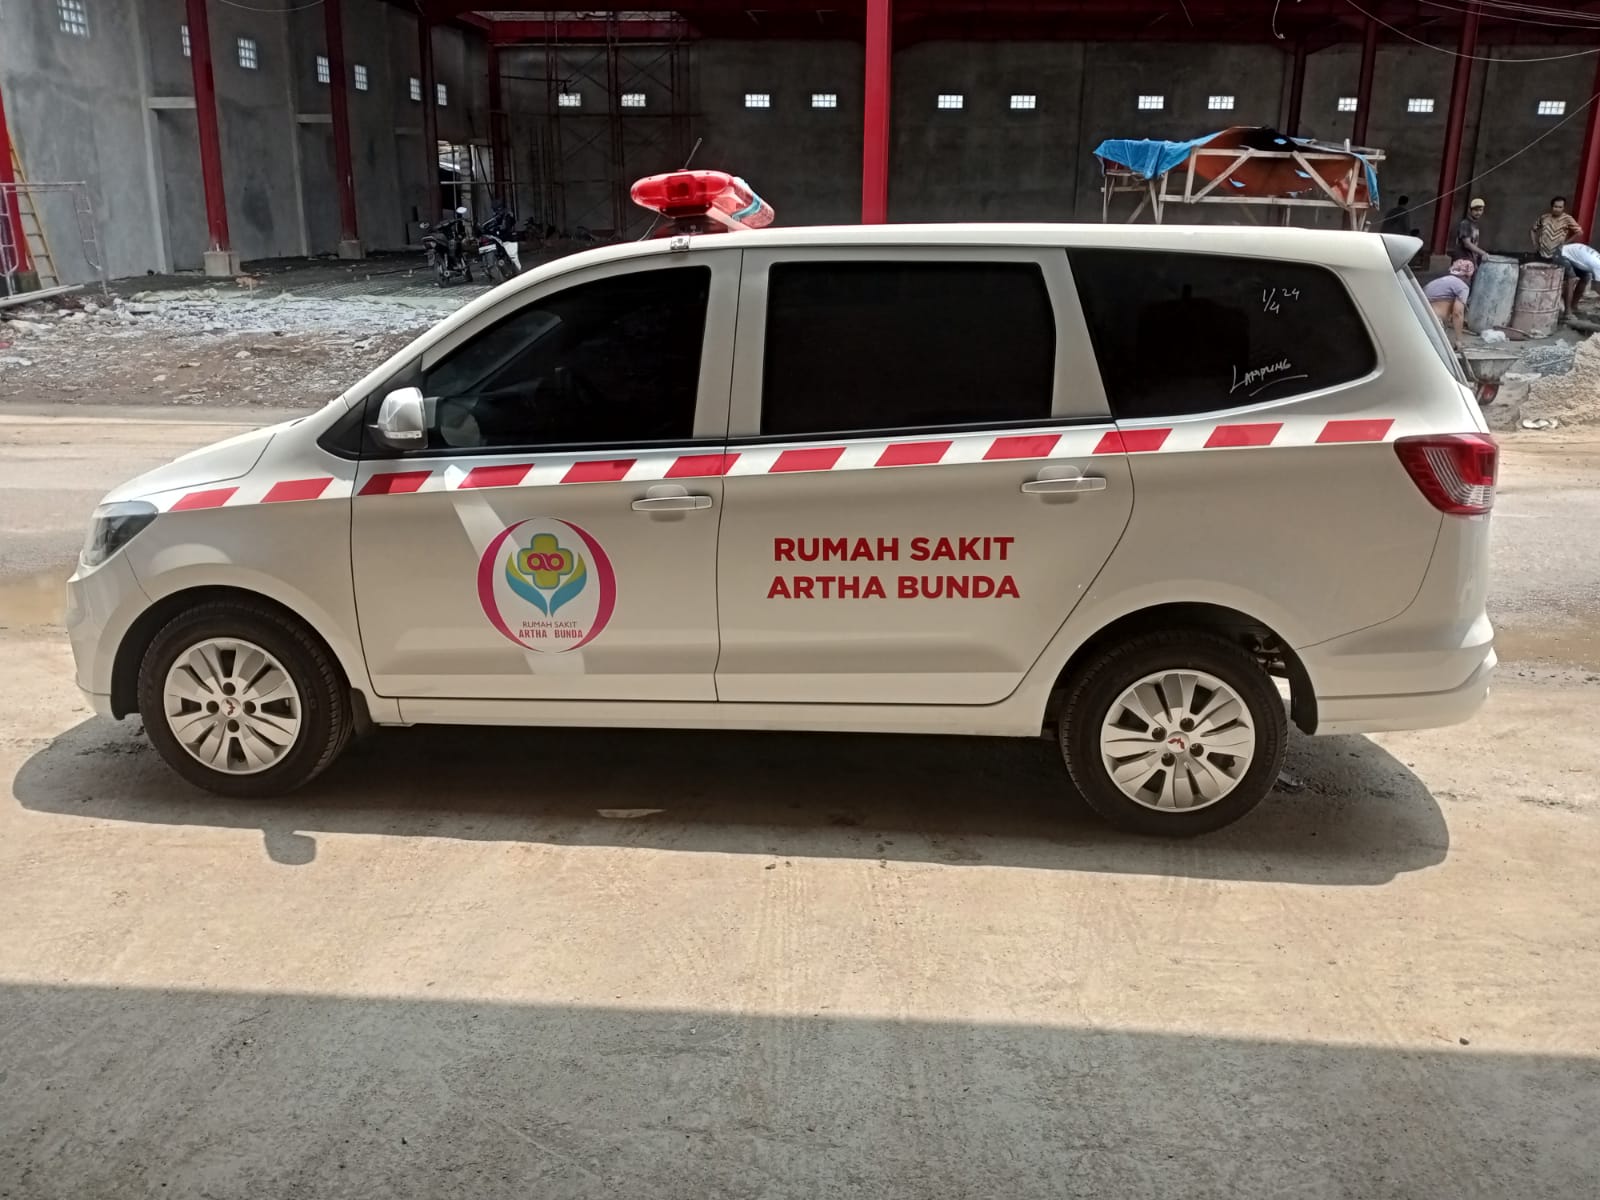 Harga Bengkel Karoseri Ambulance Berkualitas Surabaya